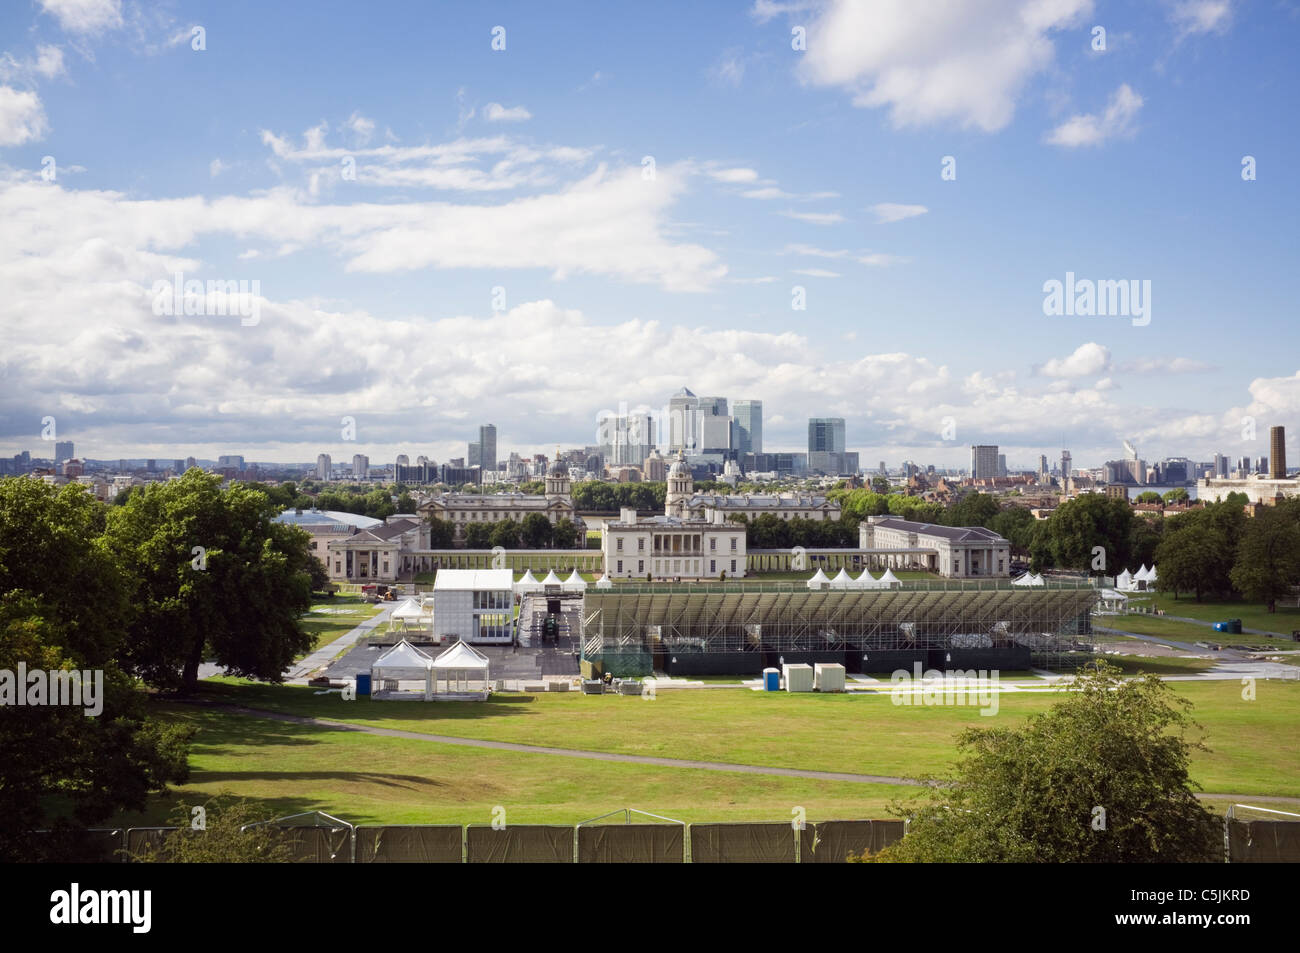 Vista di 2012 giochi olimpici eventi equestri venue e stadium in la casa della regina motivi. Il parco di Greenwich, London, England, Regno Unito, Gran Bretagna Foto Stock